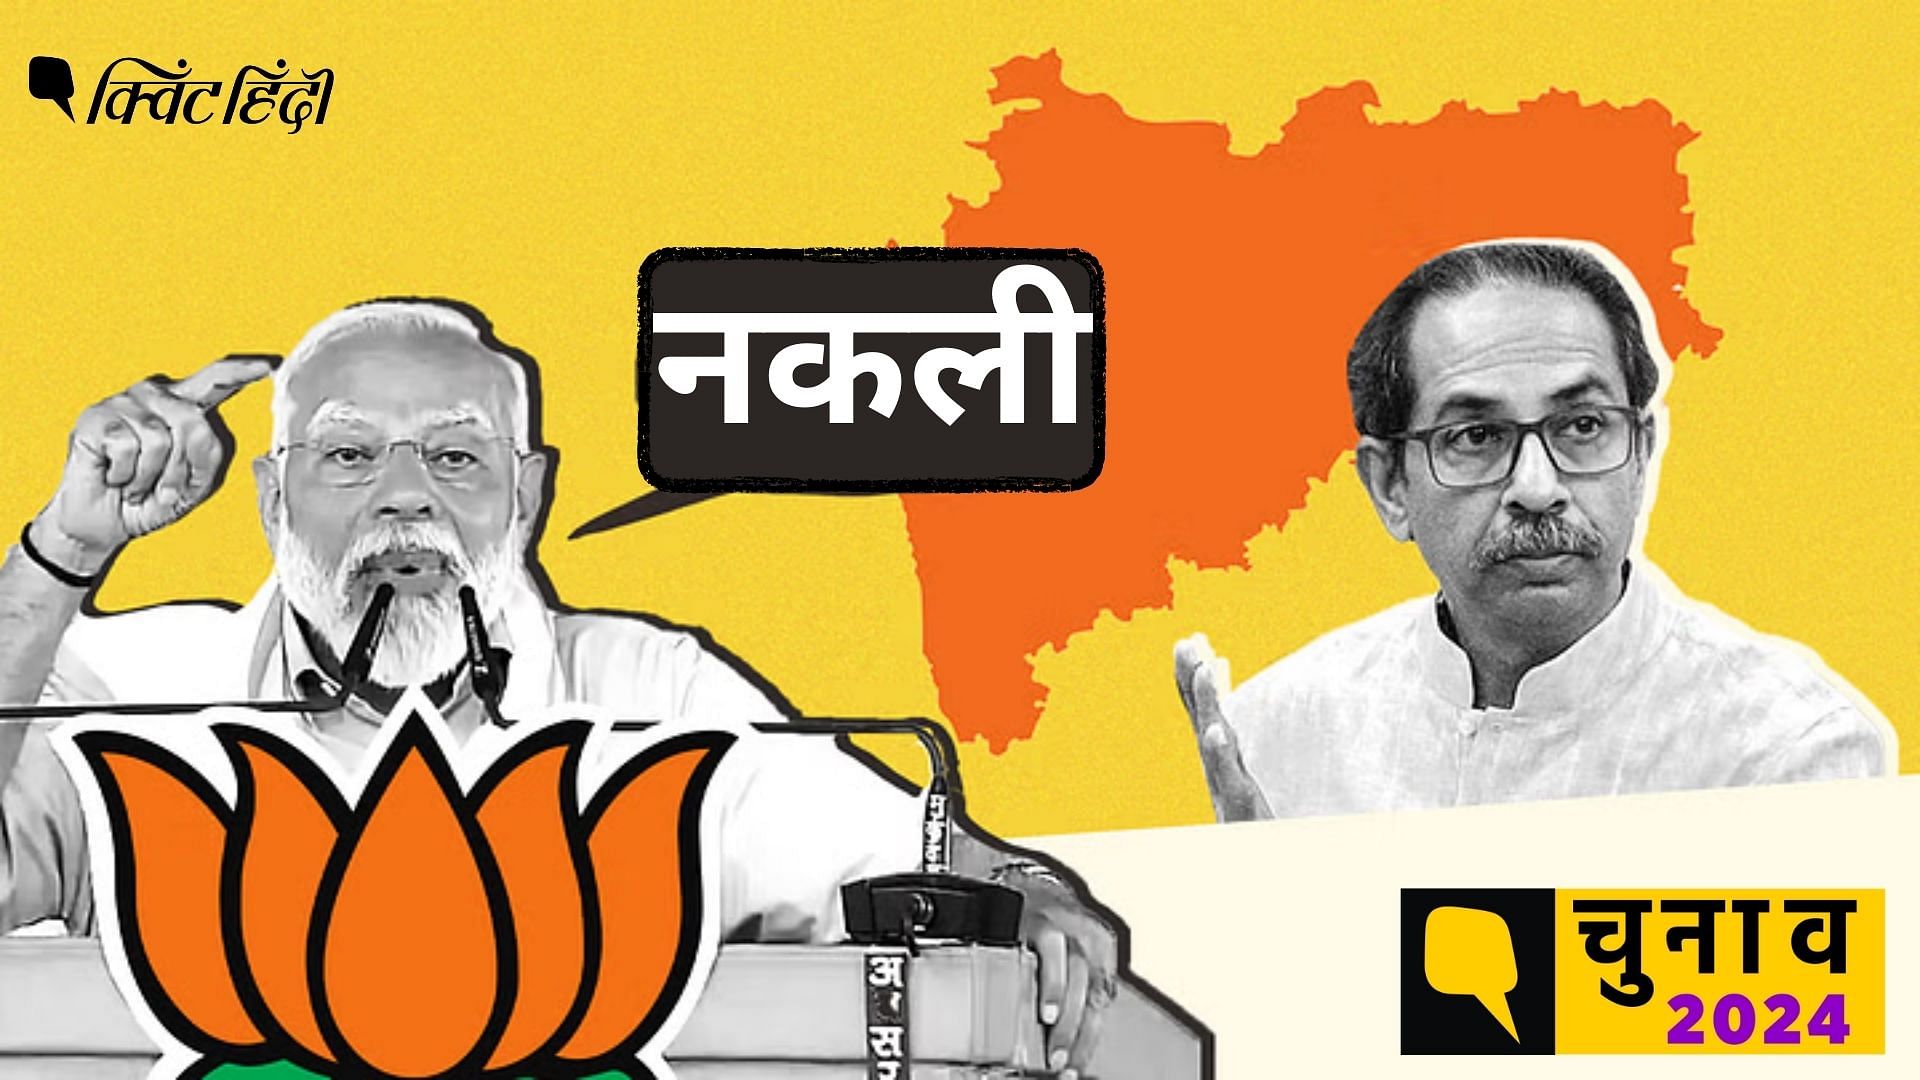 <div class="paragraphs"><p>Maharashtra Politics: Shivsena vs BJP</p></div>